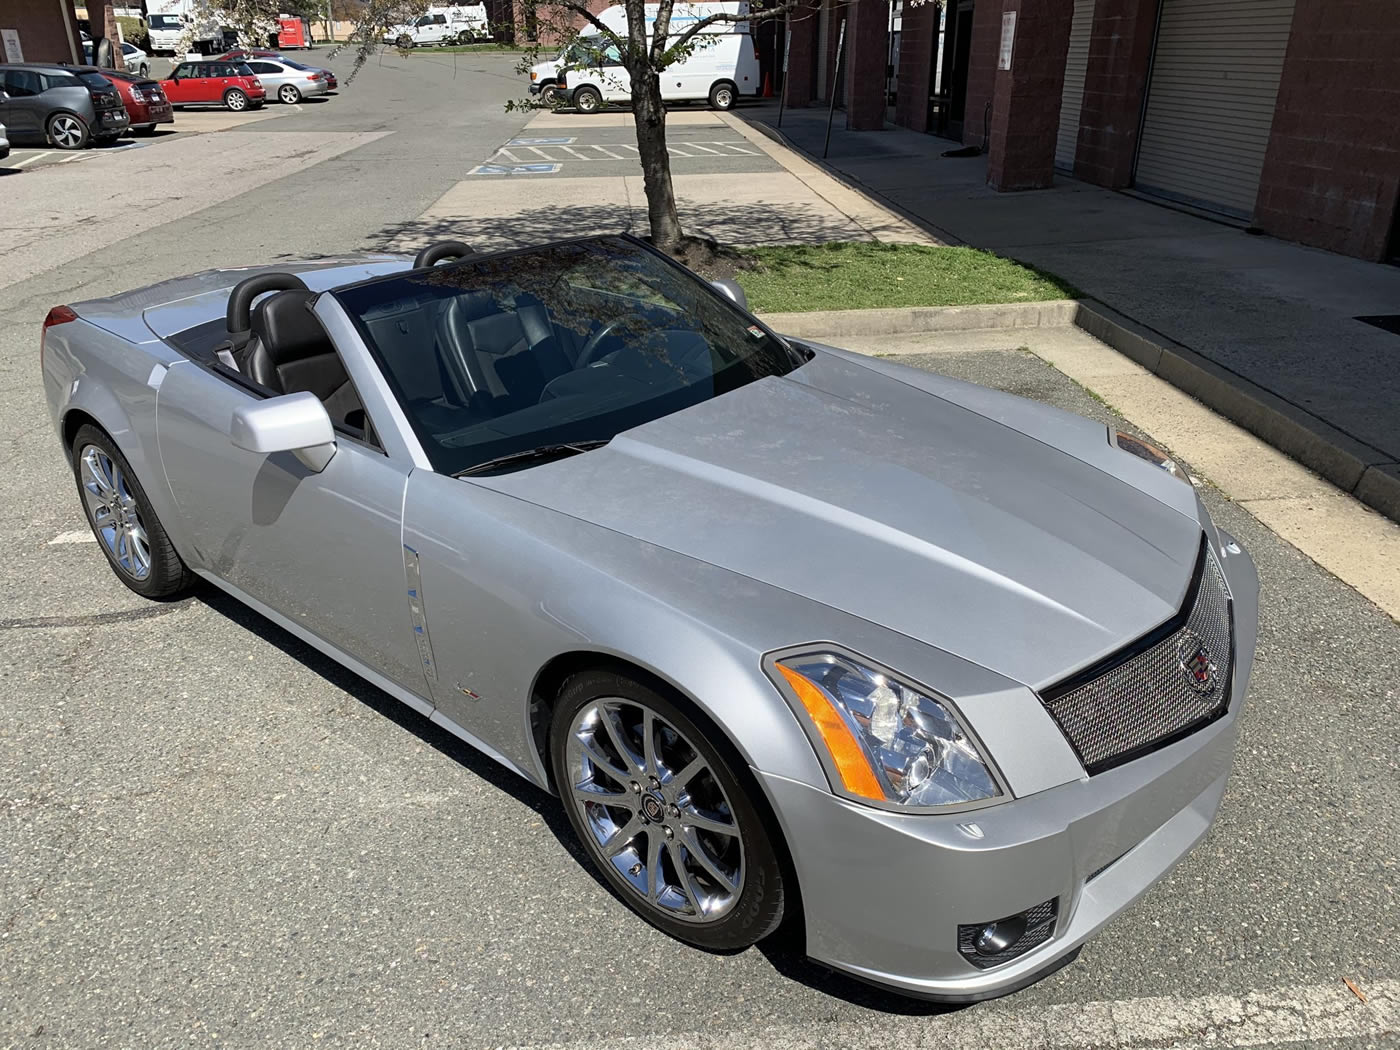 2009 Cadillac XLR-V in Radiant Silver